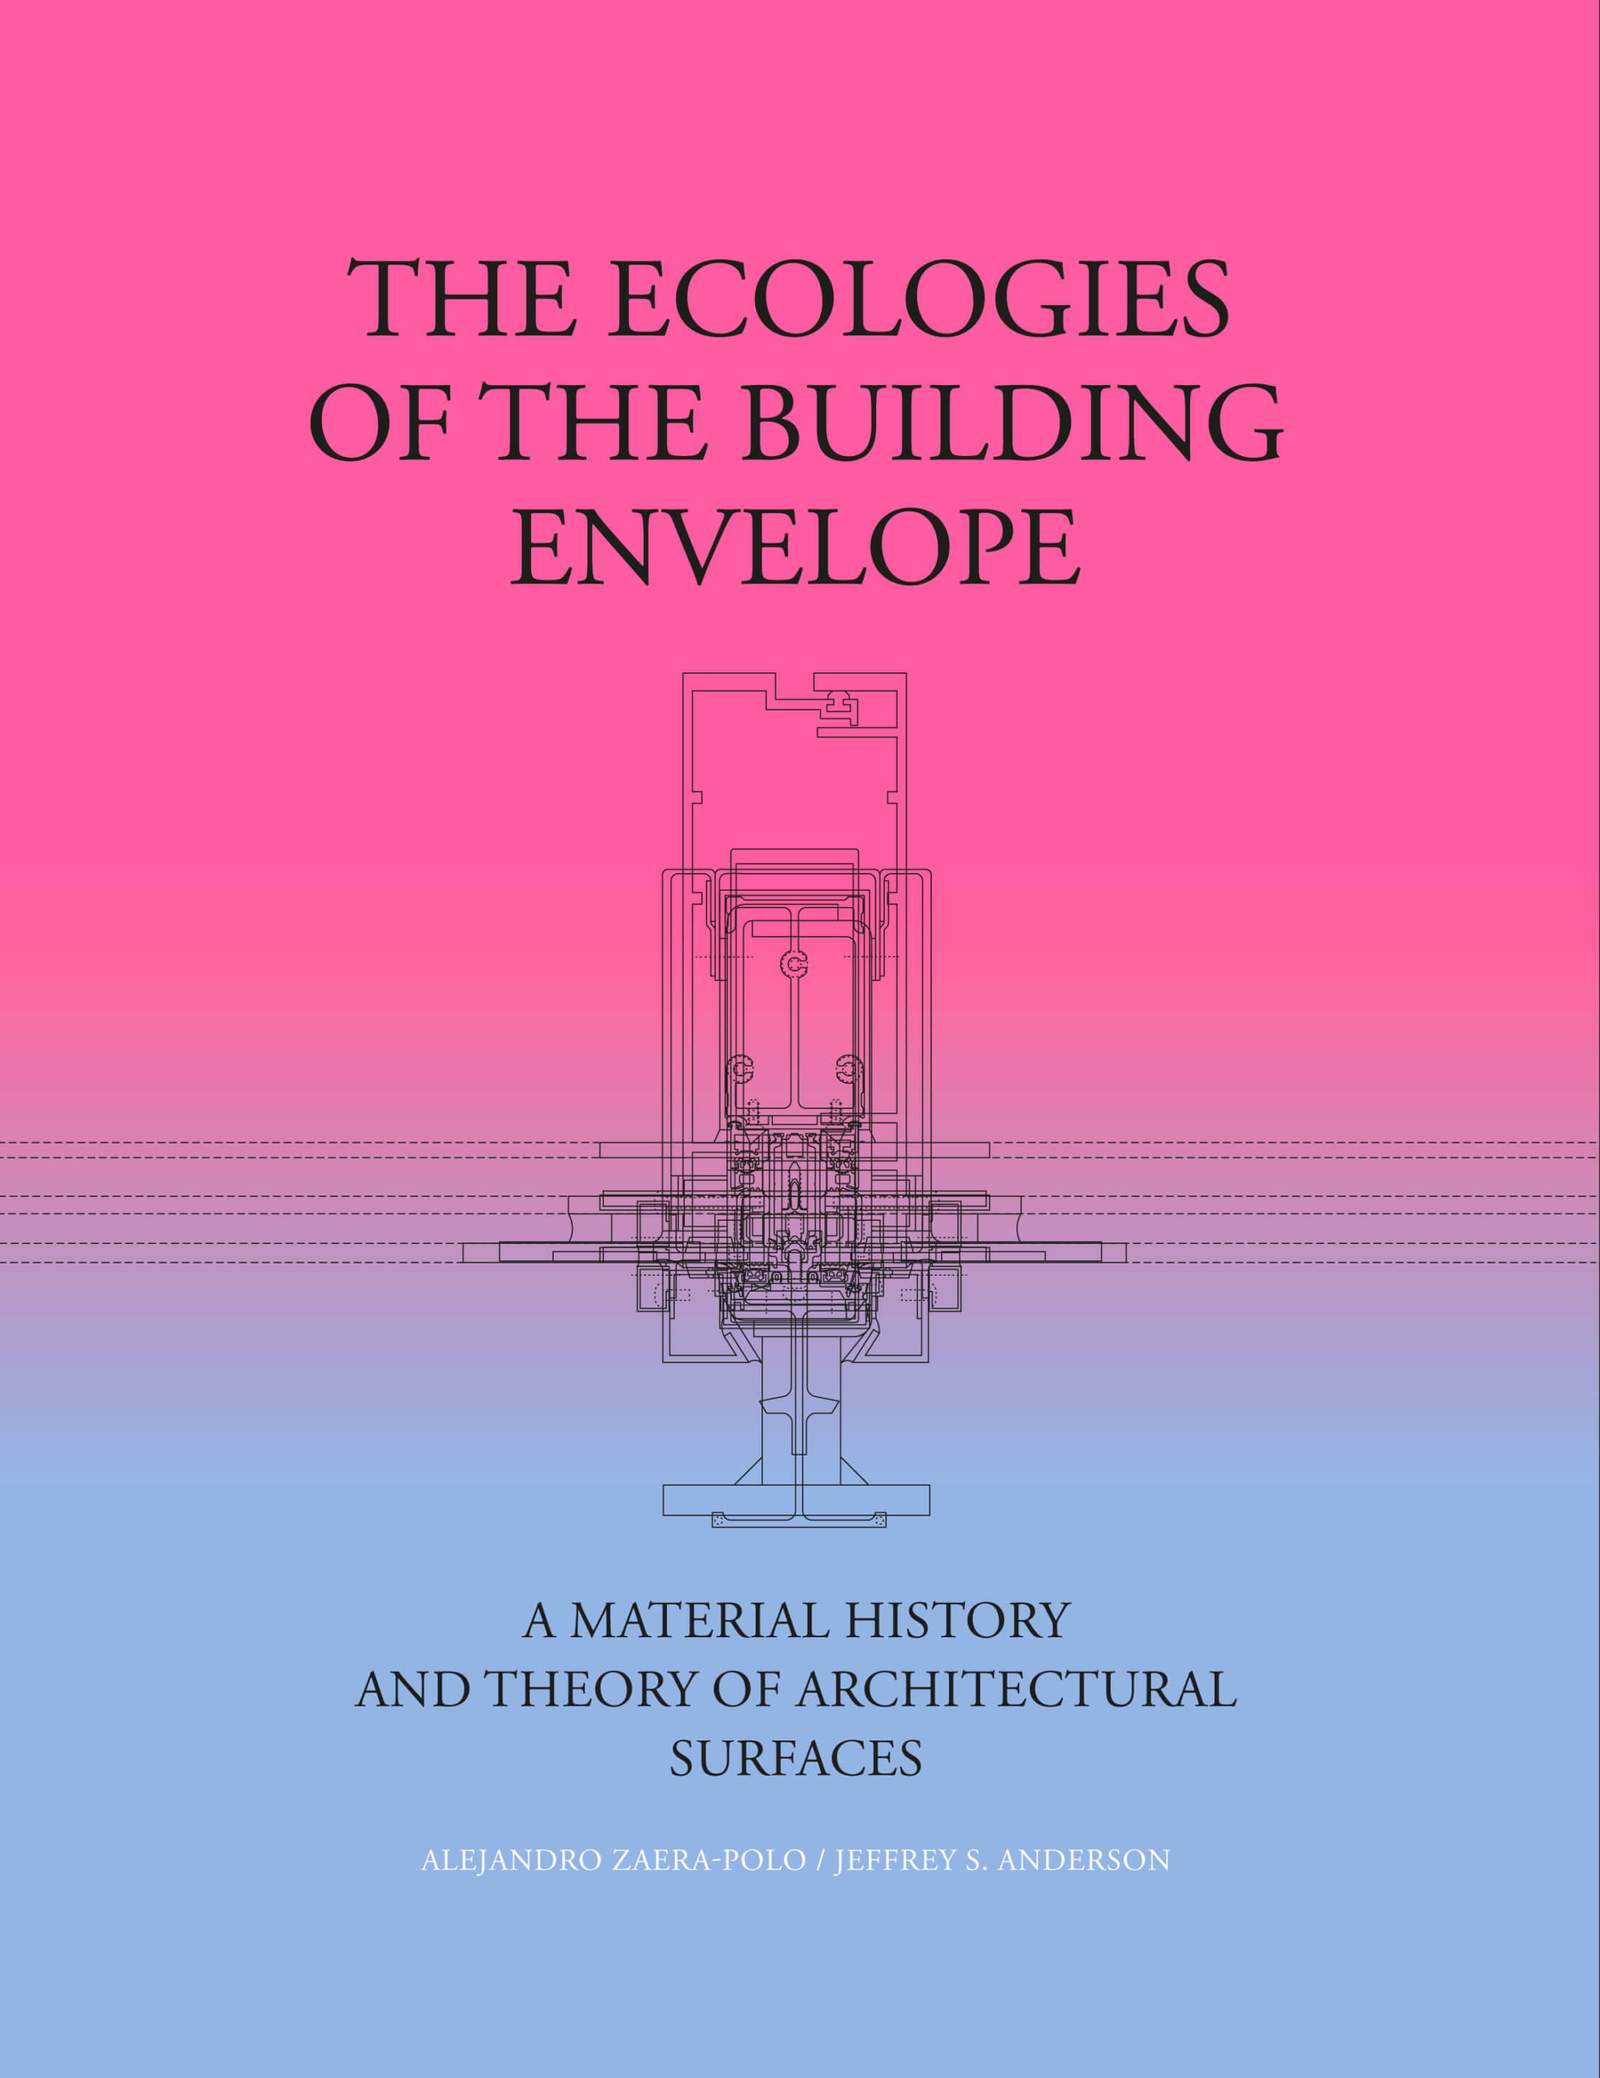 غلاف كتاب لإيكولوجيا غلاف المبنى